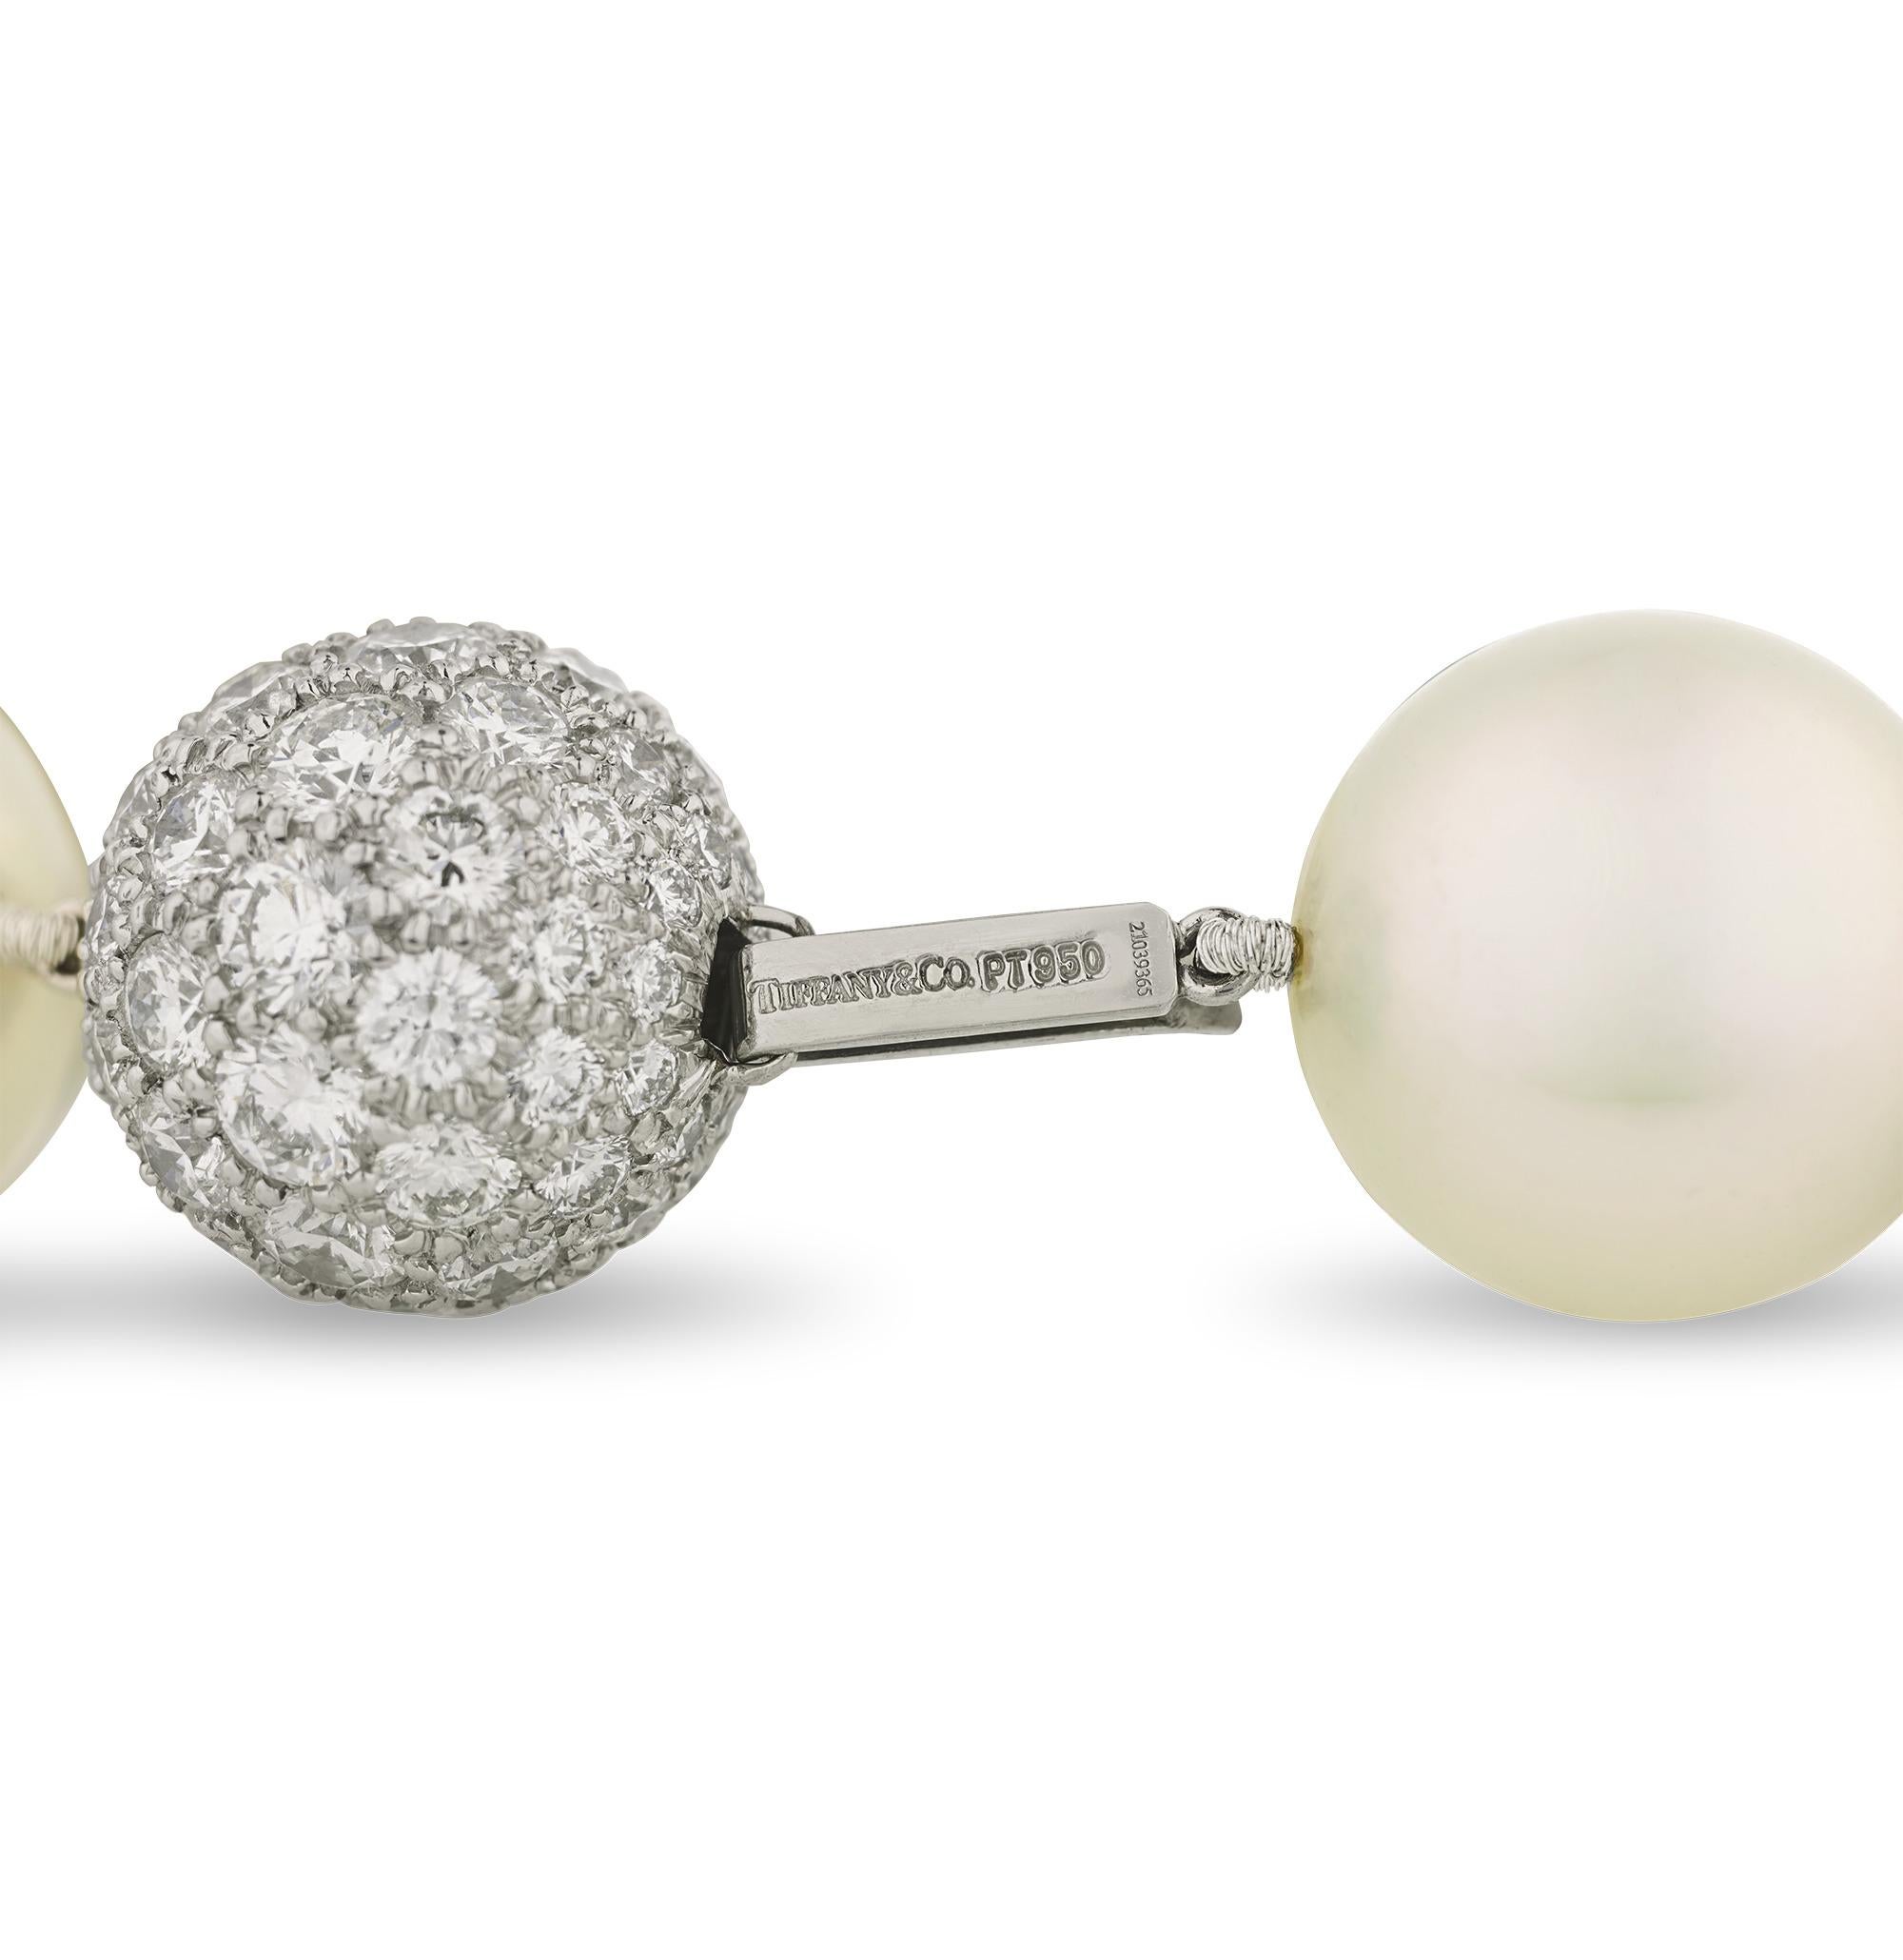 D'une qualité exceptionnelle, ce rang de perles des mers du Sud de la célèbre maison Tiffany & Co. présente un large éventail de couleurs. Affichant des teintes allant du blanc lustré et des nuances de gris au noir profond et aux ors vibrants, ces